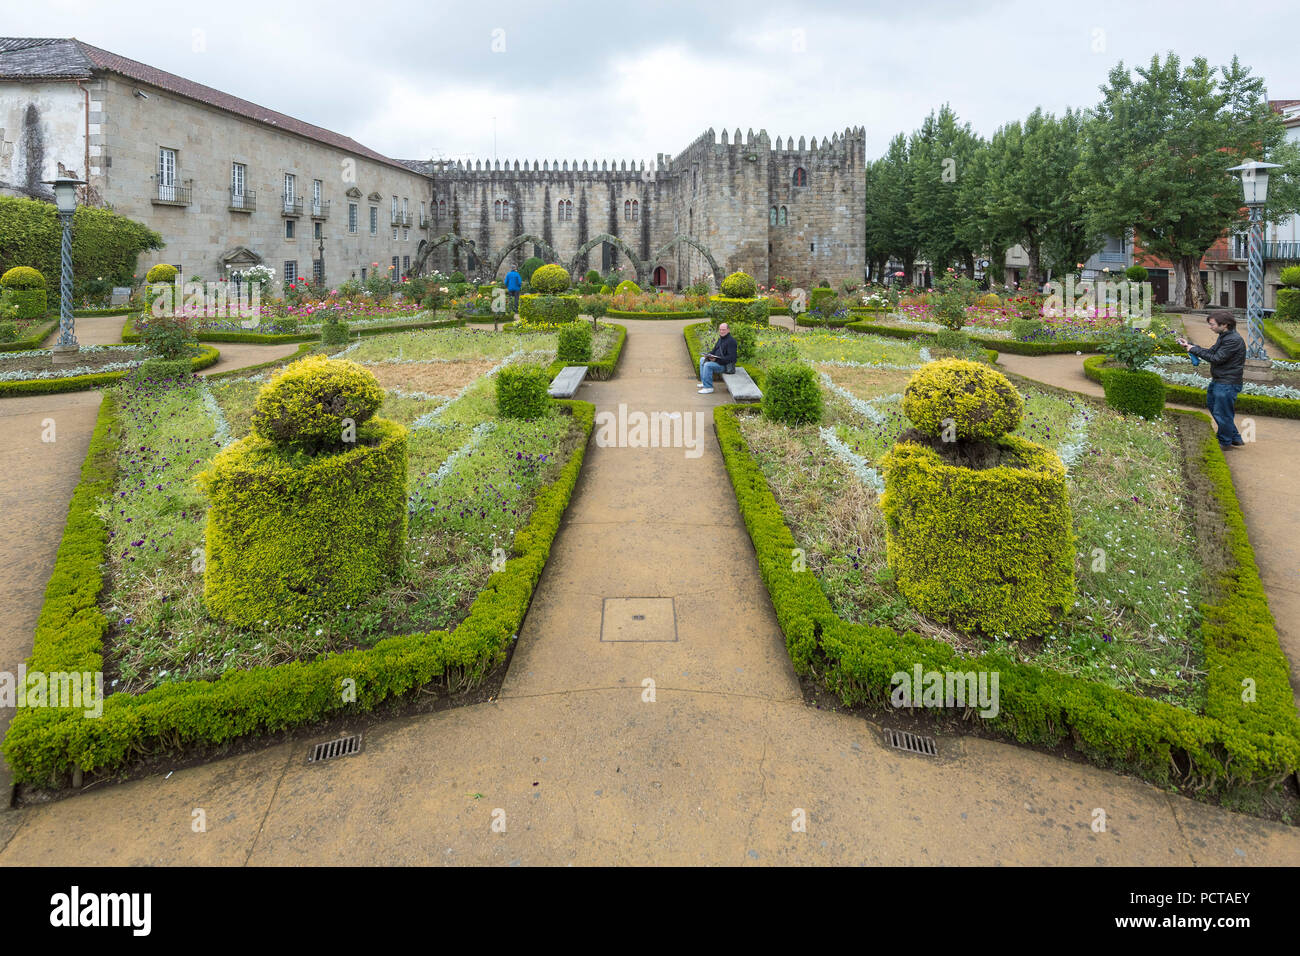 Jardim de Santa Barbara befindet sich neben dem Zinnen von Antigo Paco Episcopal, das ehemalige erzbischöfliche Palast, Braga, Braga district, Portugal, Europa Stockfoto